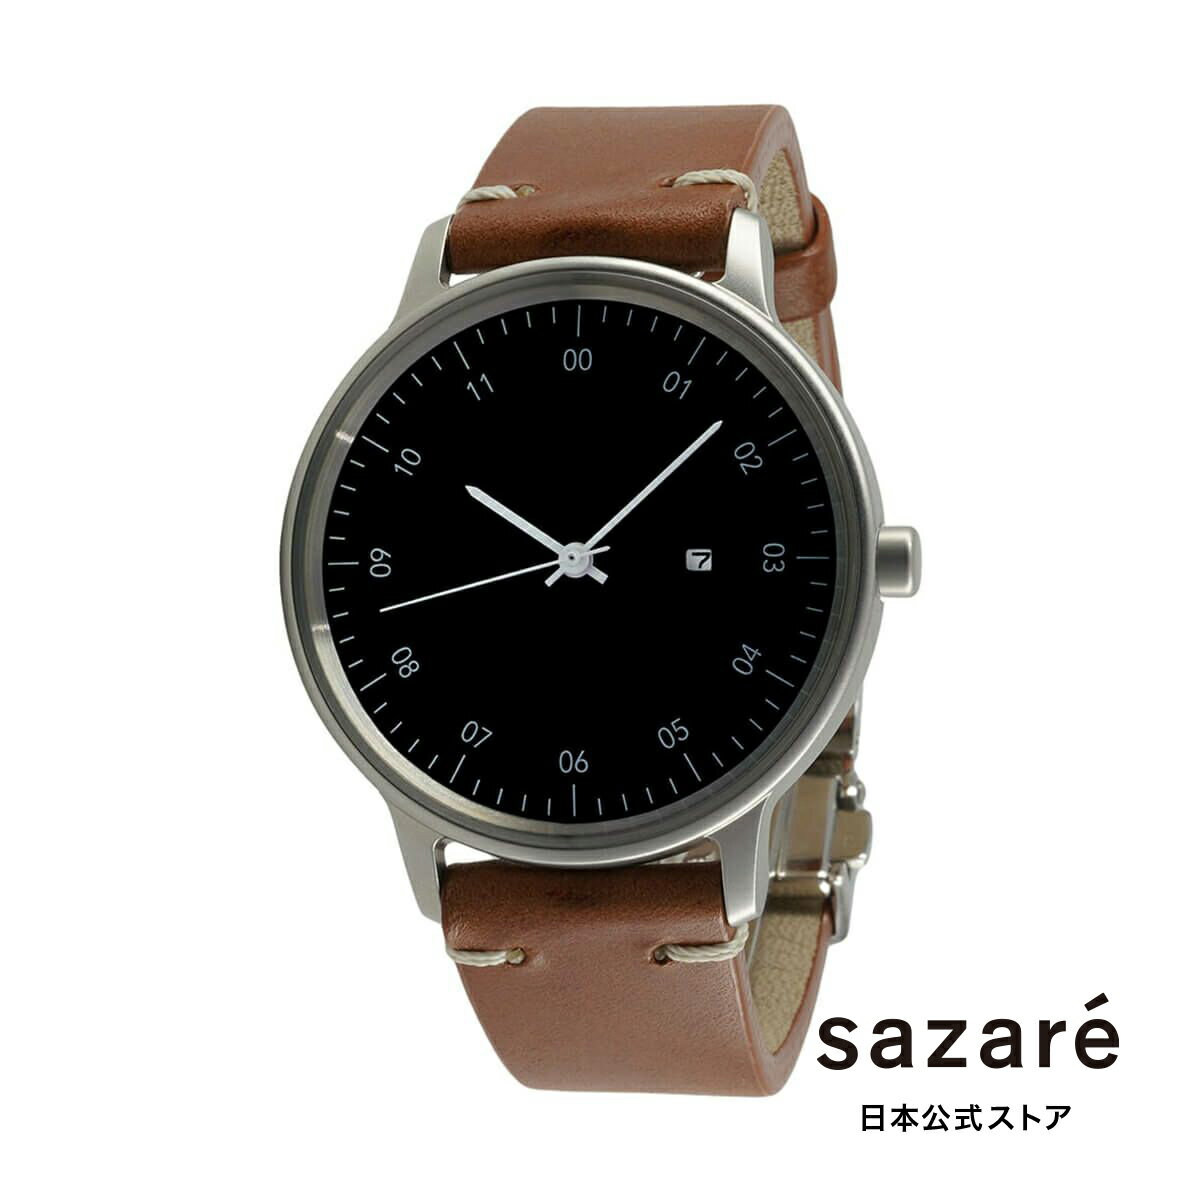 sazare さざれ 公式ストア 腕時計 メンズ ブランド レディース ウォッチ SK01 / SS シルバー ホーニング フィニッシュ / ブラック ダイヤル /シルバー D バックル ライトブラウン ブッテーロレザー